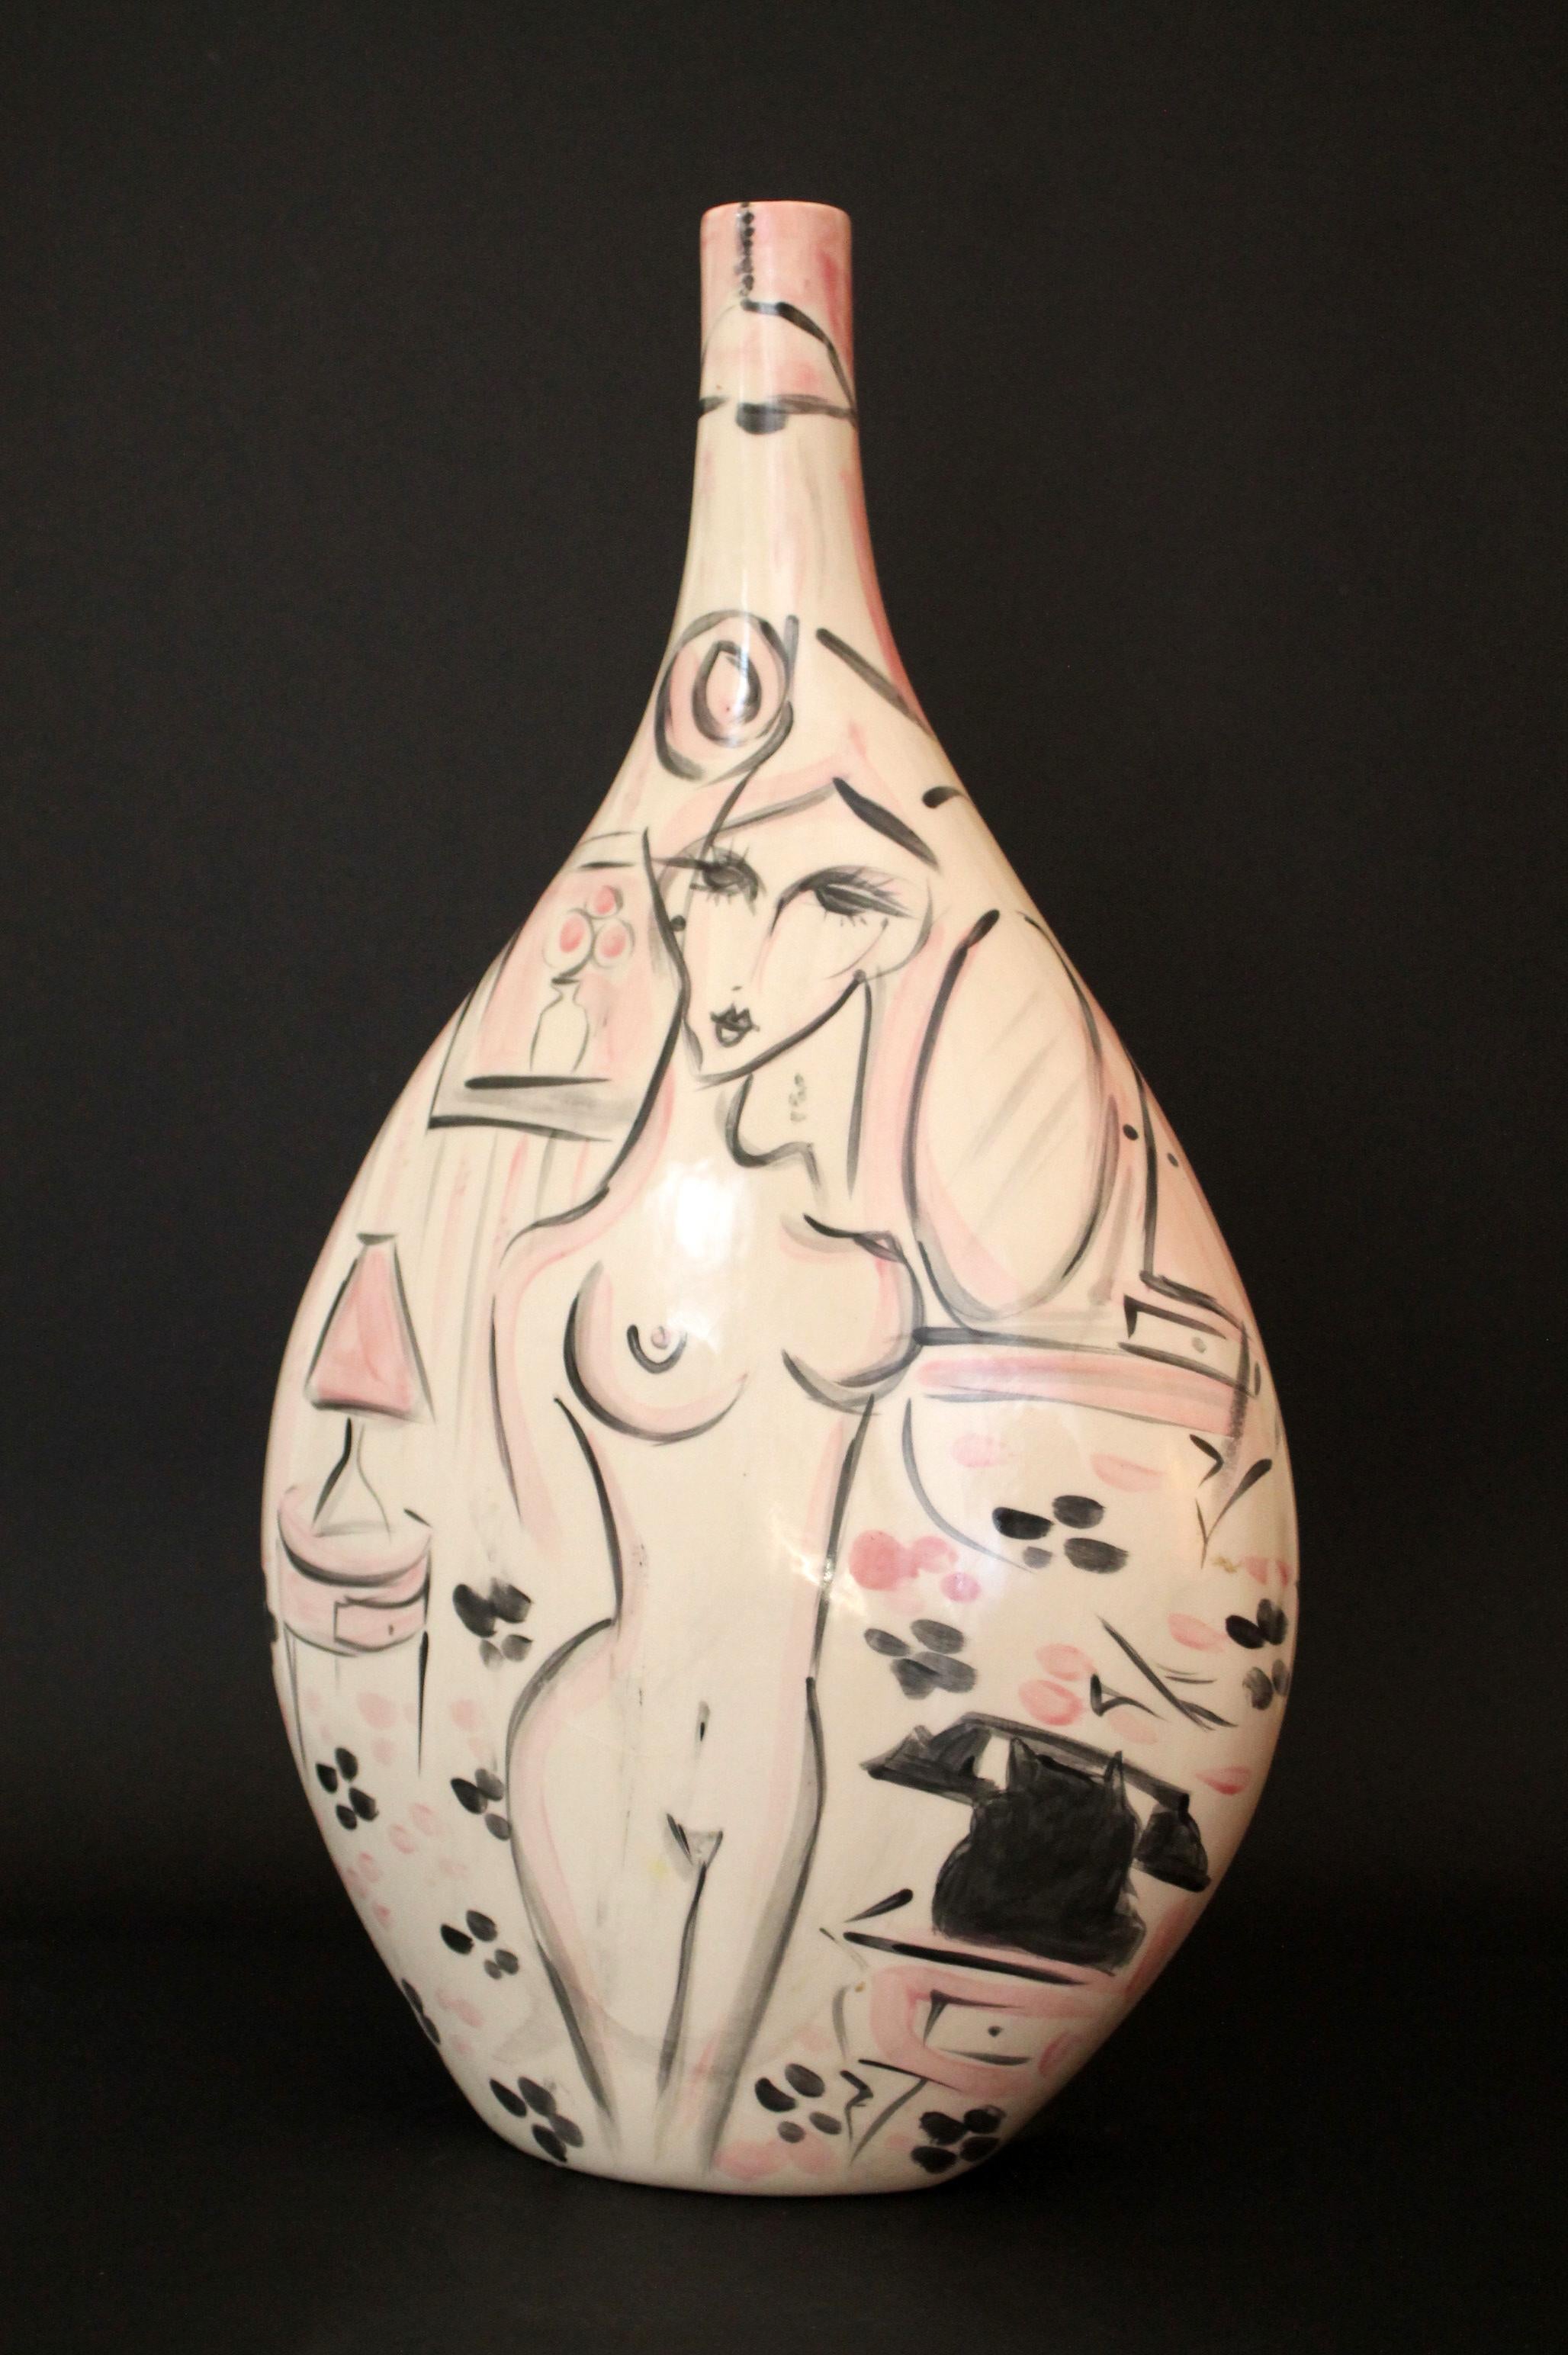 Mittelgroße, wunderschöne Keramikvase des brasilianischen Keramikers Cris CONDE

Entworfen von CRIS CONDE
Hersteller: Handgefertigt + handbemalt durch den Künstler (Eigenes Studio)
Technik: Doppelseitiges Stück (2 verschiedene künstlerische Layouts)